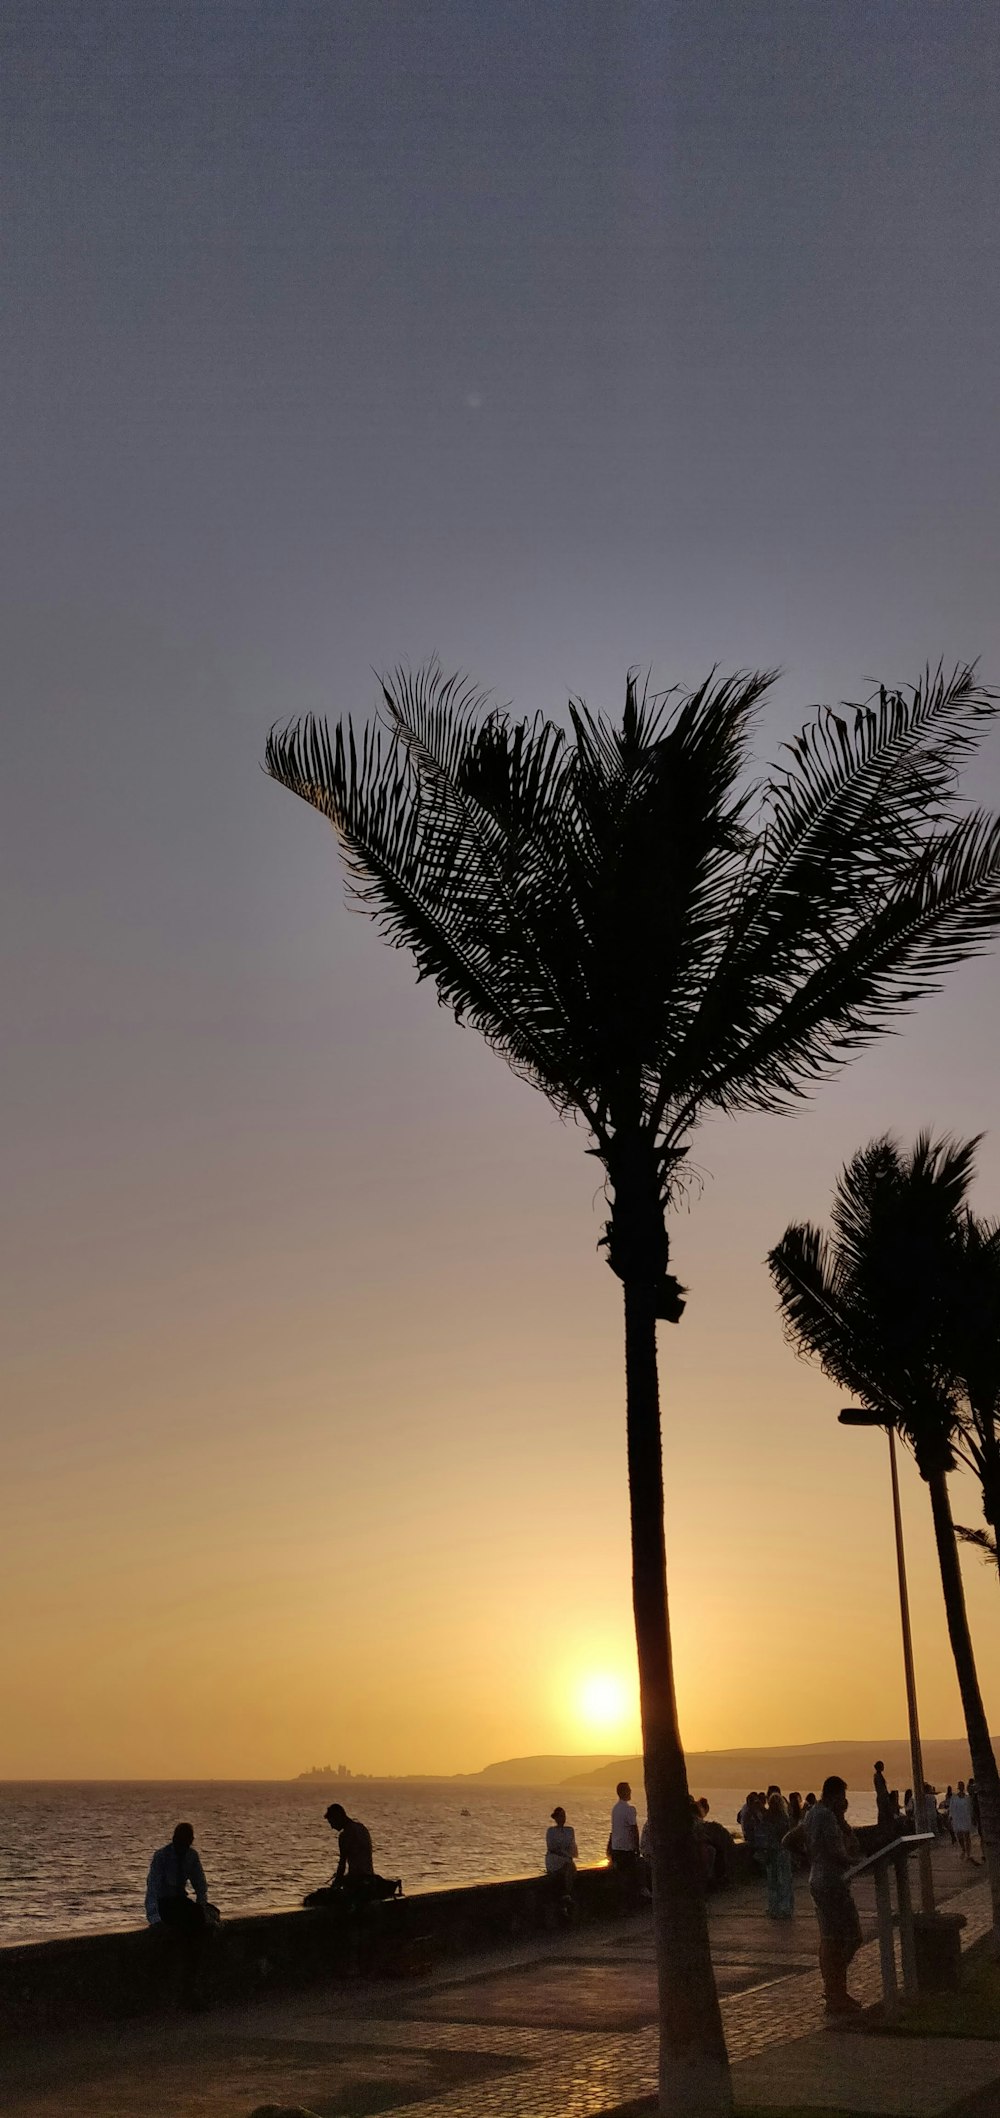 photo de silhouette de palmiers alignés près des personnes assises à l’heure dorée